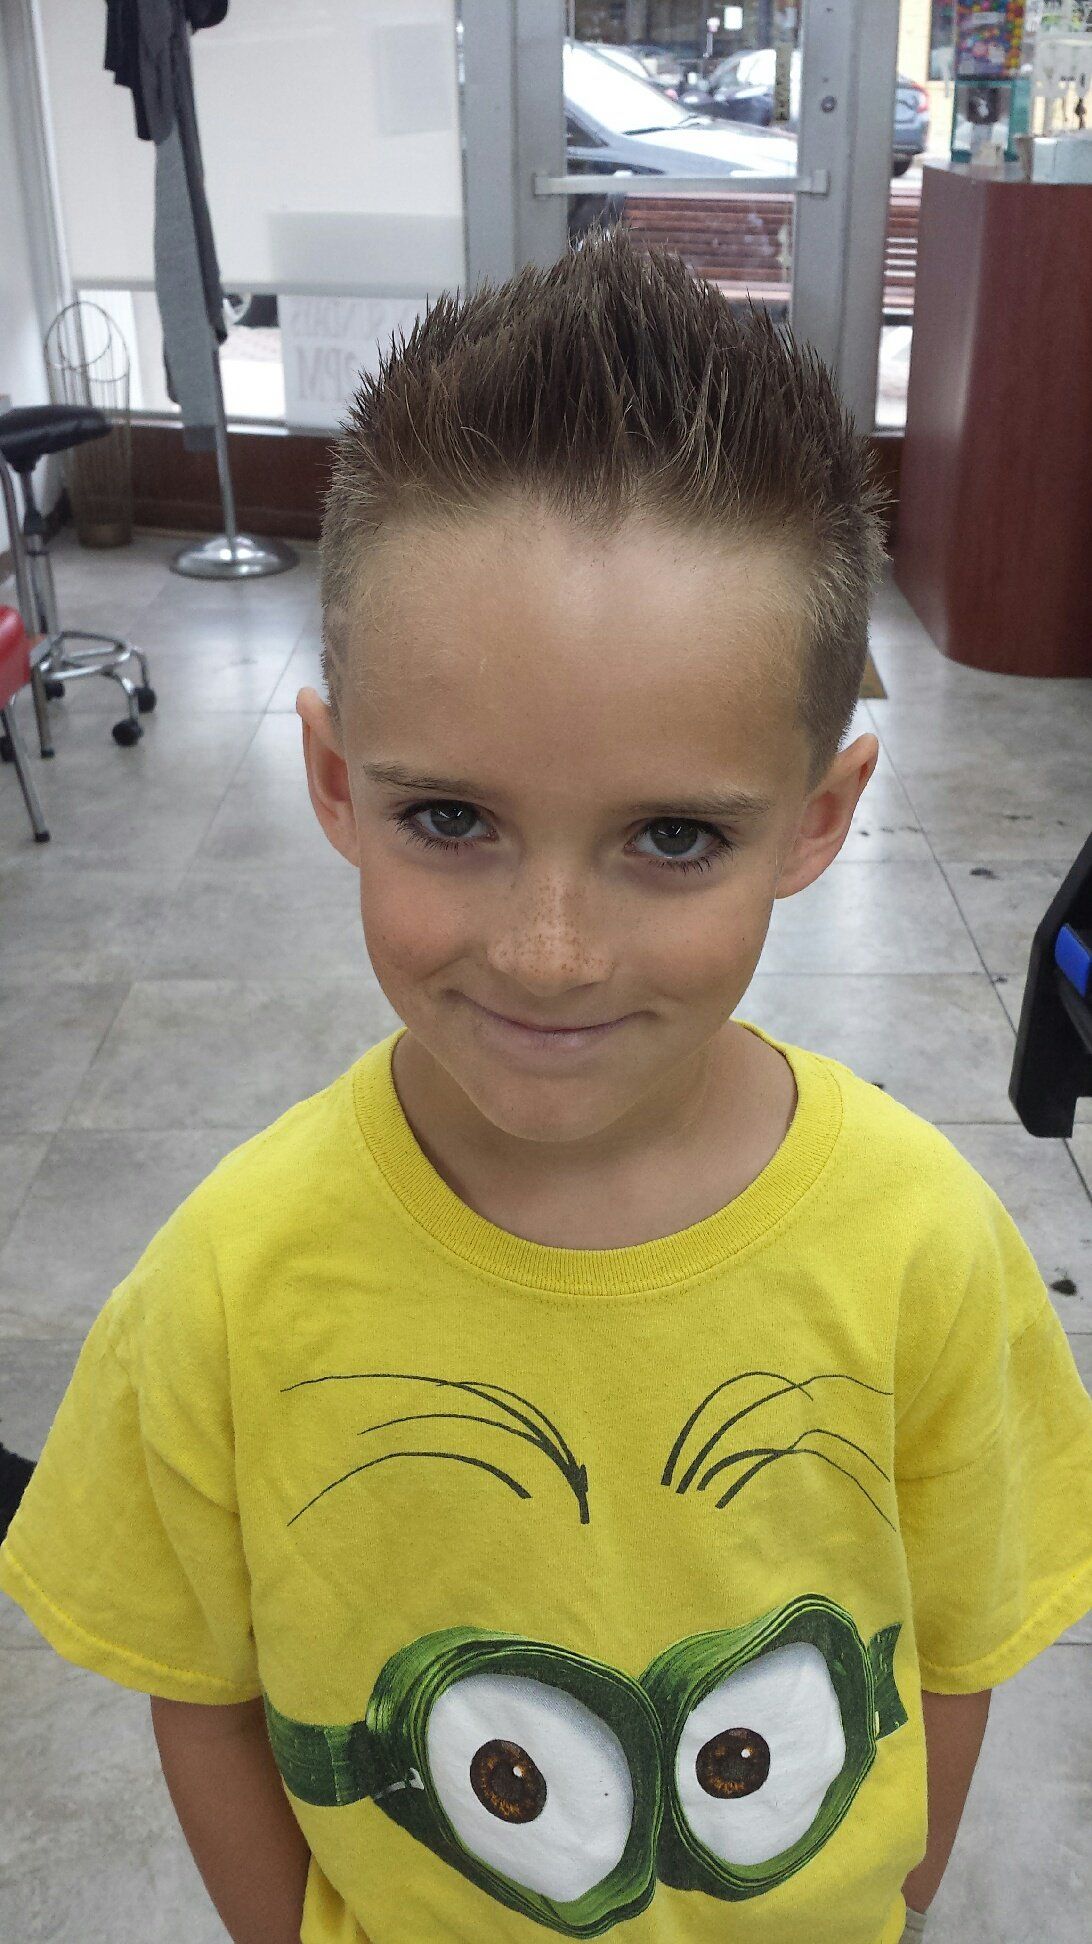 Kid's hair cut